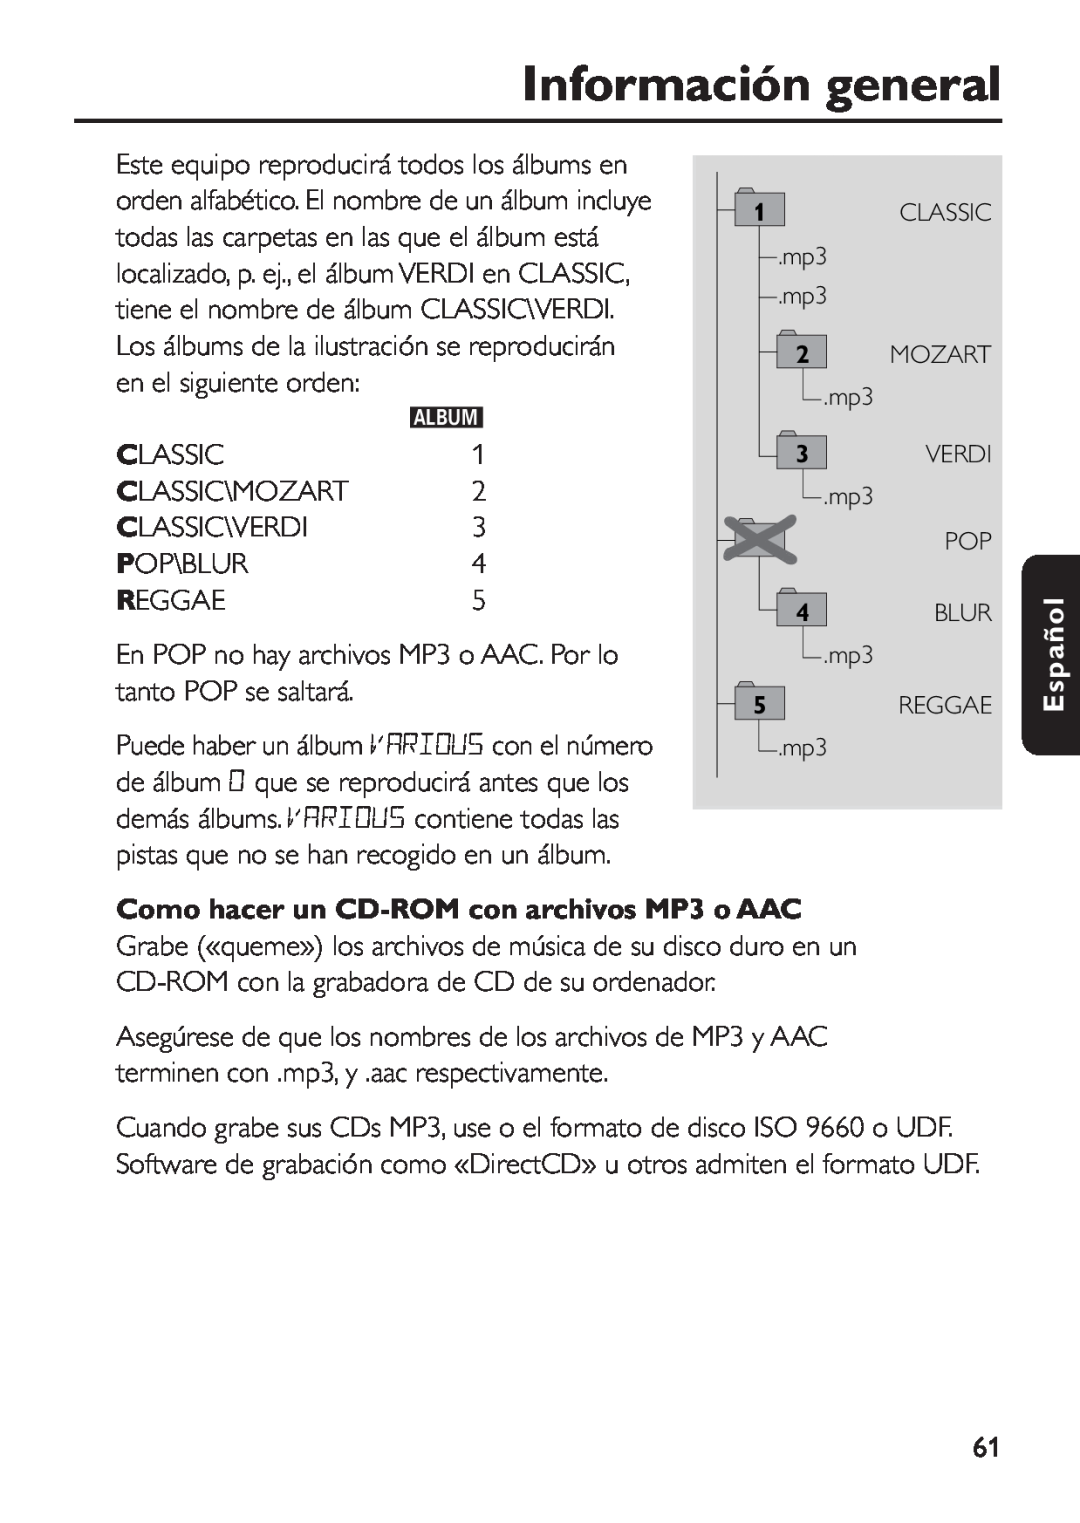 Philips EXP 501/00 manual Como hacer un CD-ROM con archivos MP3 o AAC, Información general, Español 